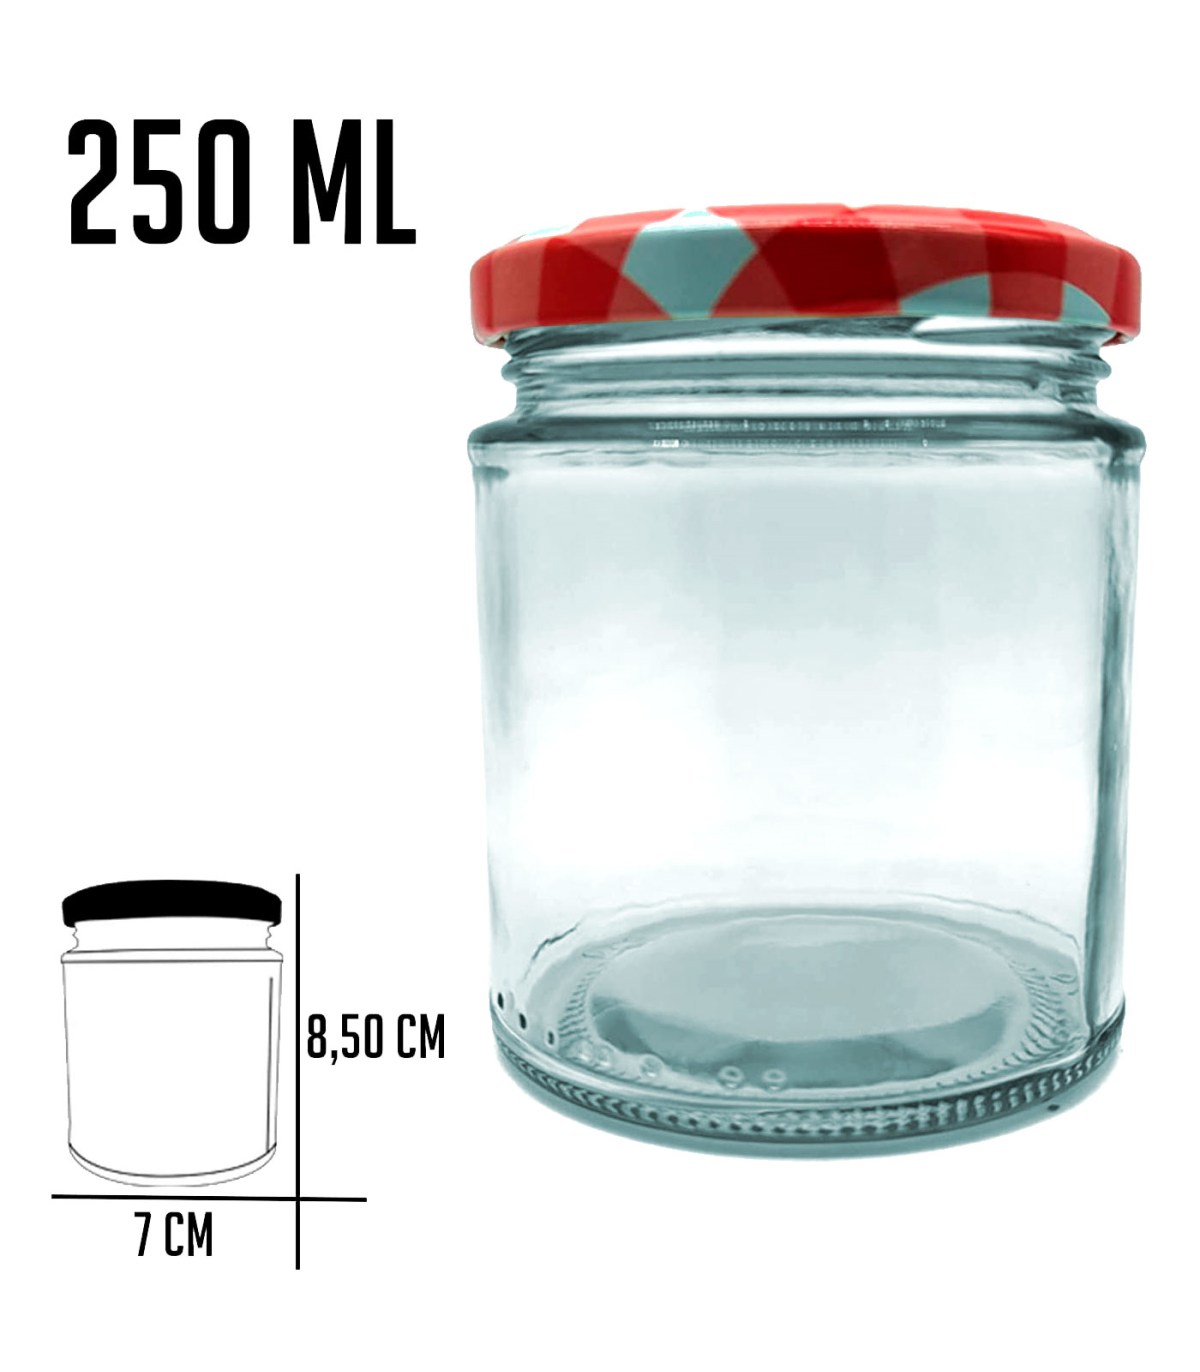 Tradineur - Pack de 3 tarros de cristal con tapa metálica de 450 ml, juego  de frascos de vidrio para caramelos, gominolas, condi